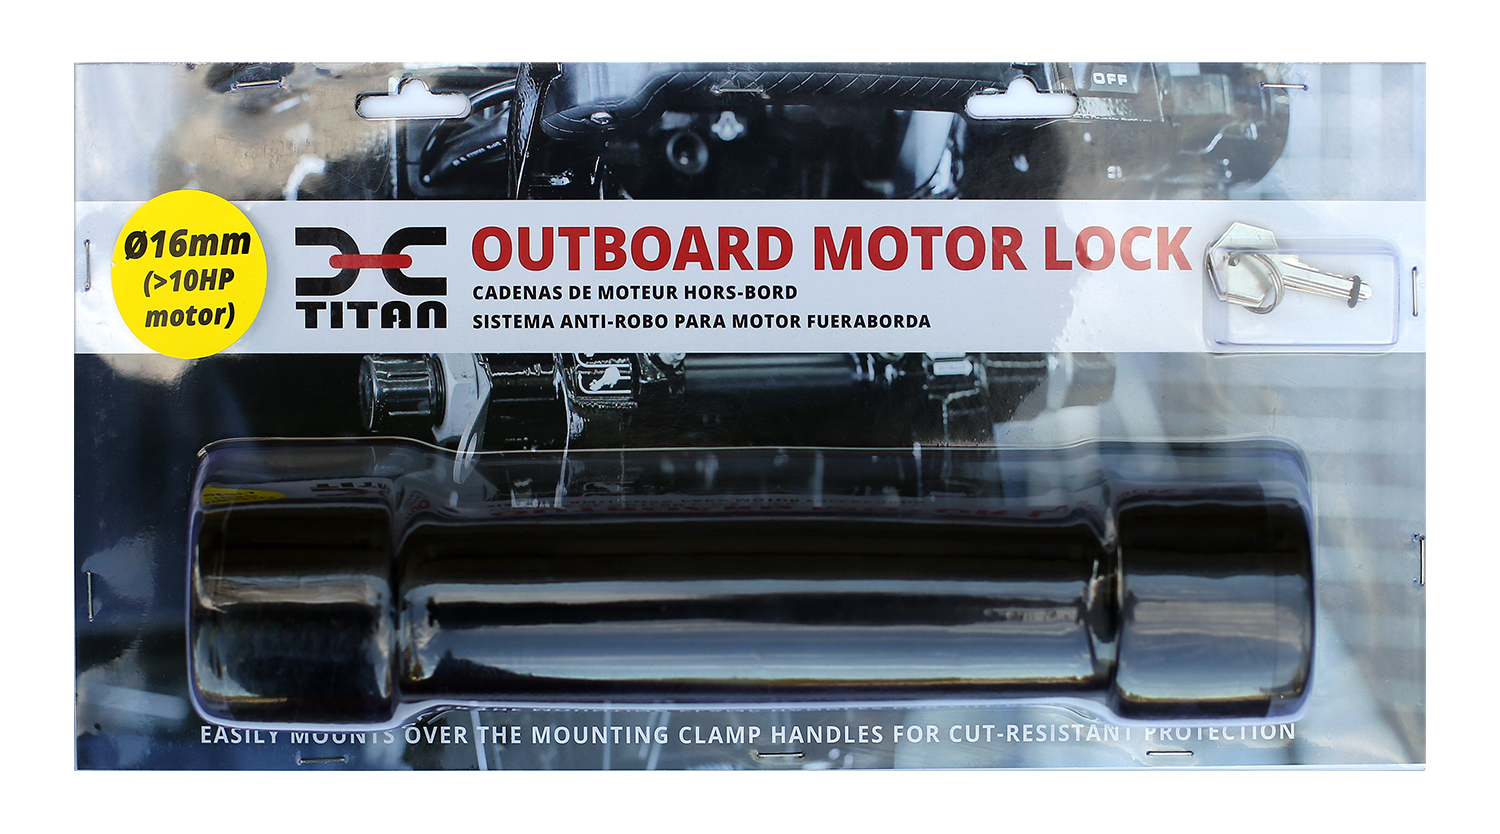 Outboard Motor Lock